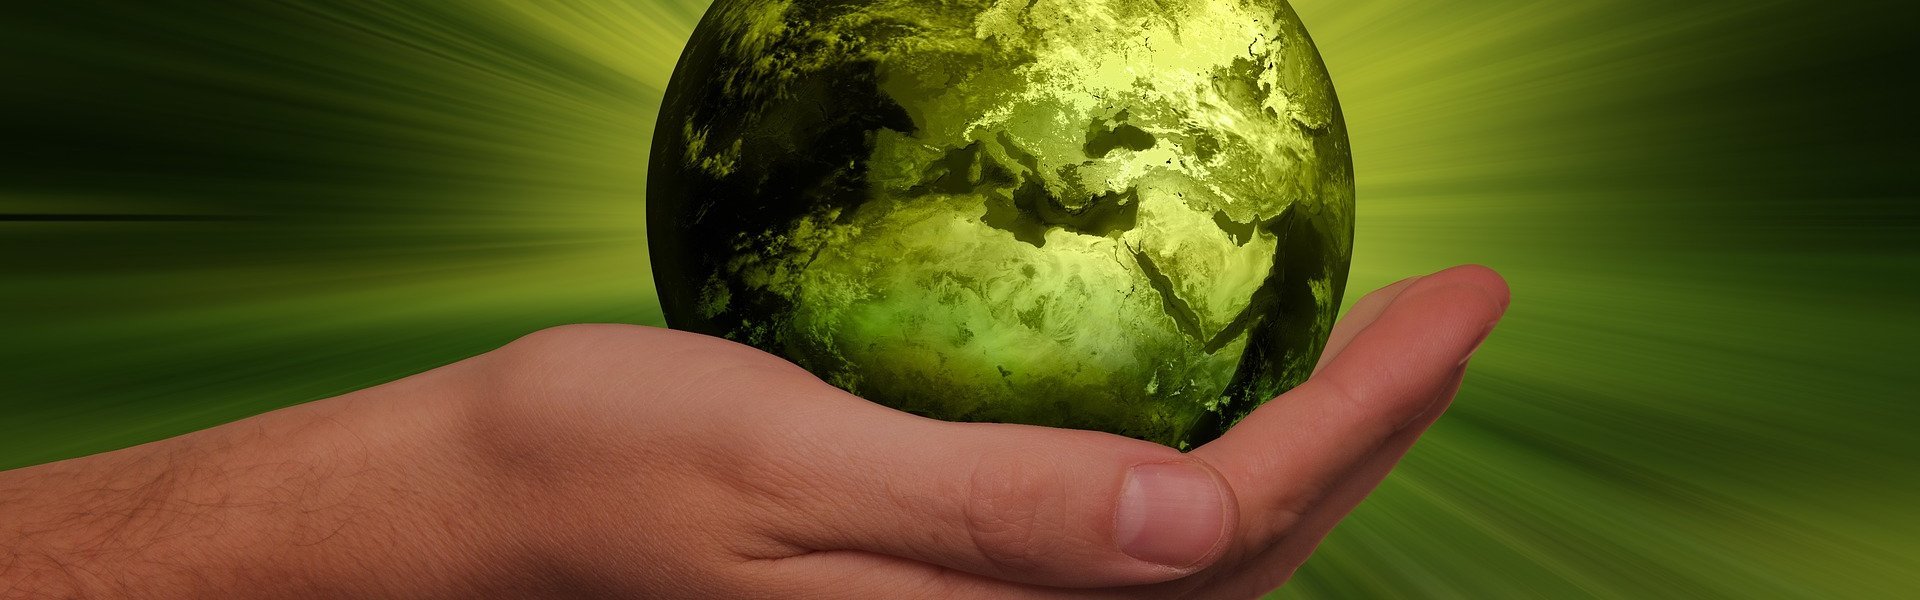 Das Bild zeigt eine Hand auf der eine grün eingefärbte Erdkugel liegt.